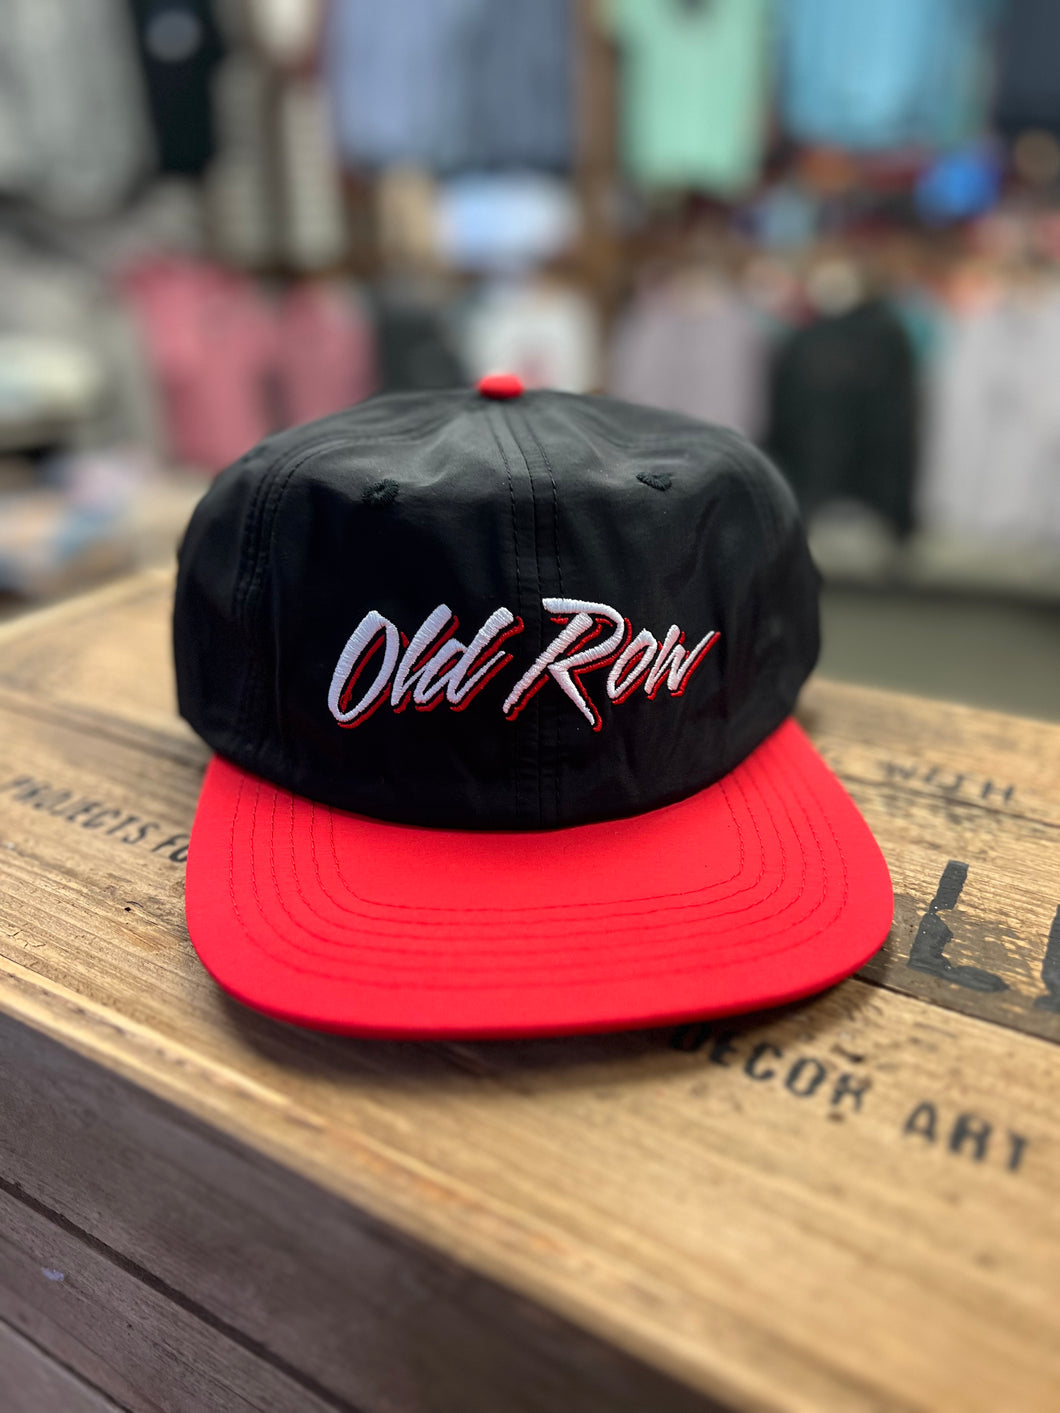 OLD ROW HATS